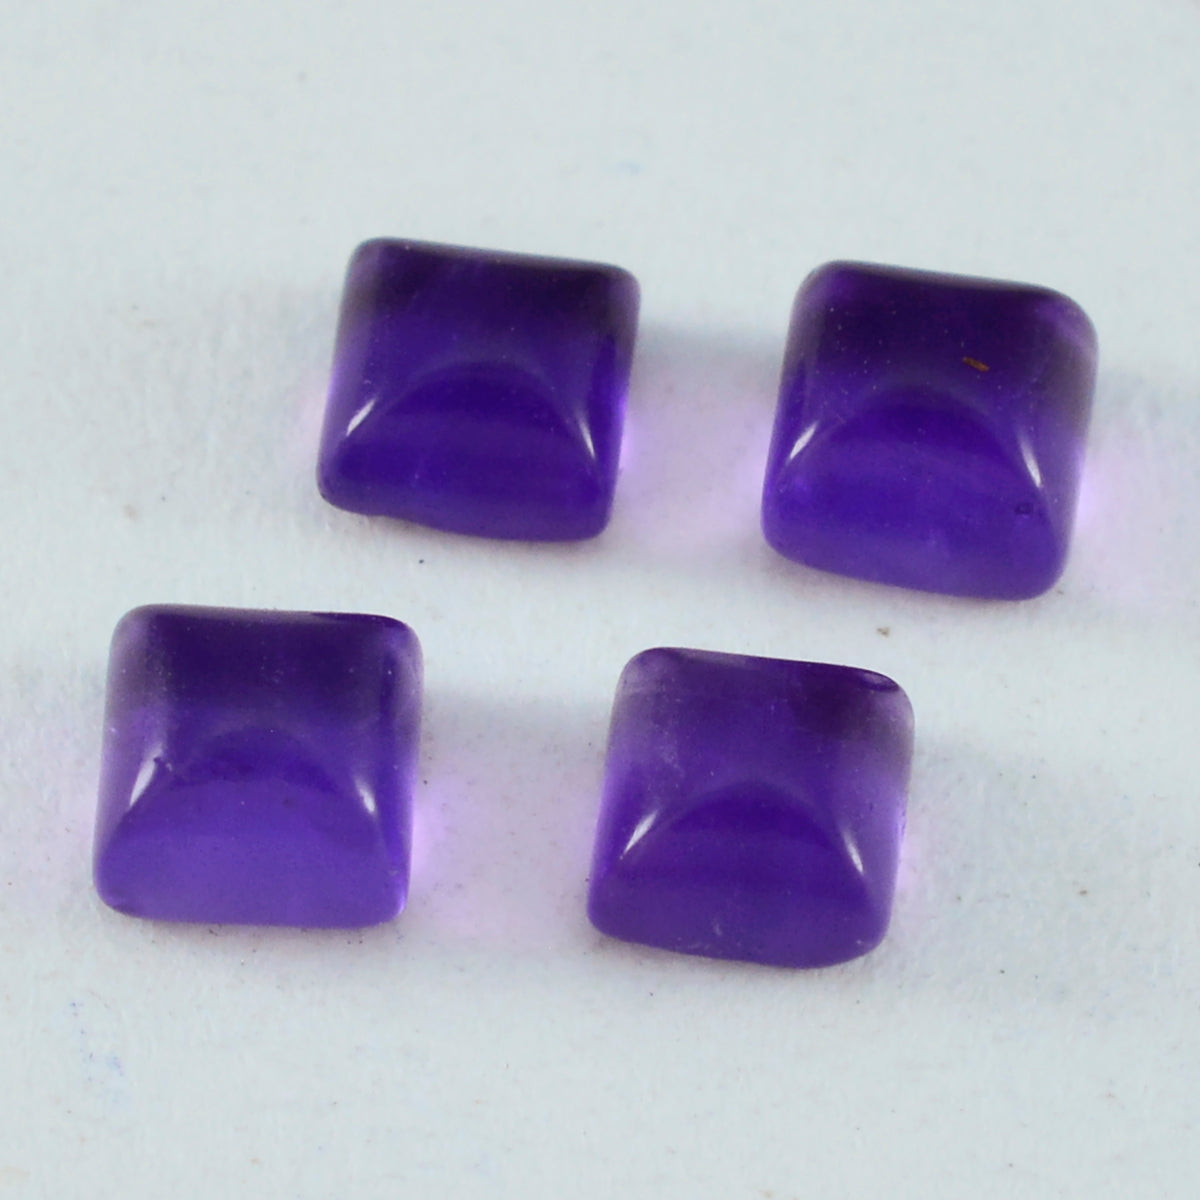 Riyogems 1 pieza cabujón de amatista púrpura 7x7 mm forma cuadrada piedra de calidad atractiva